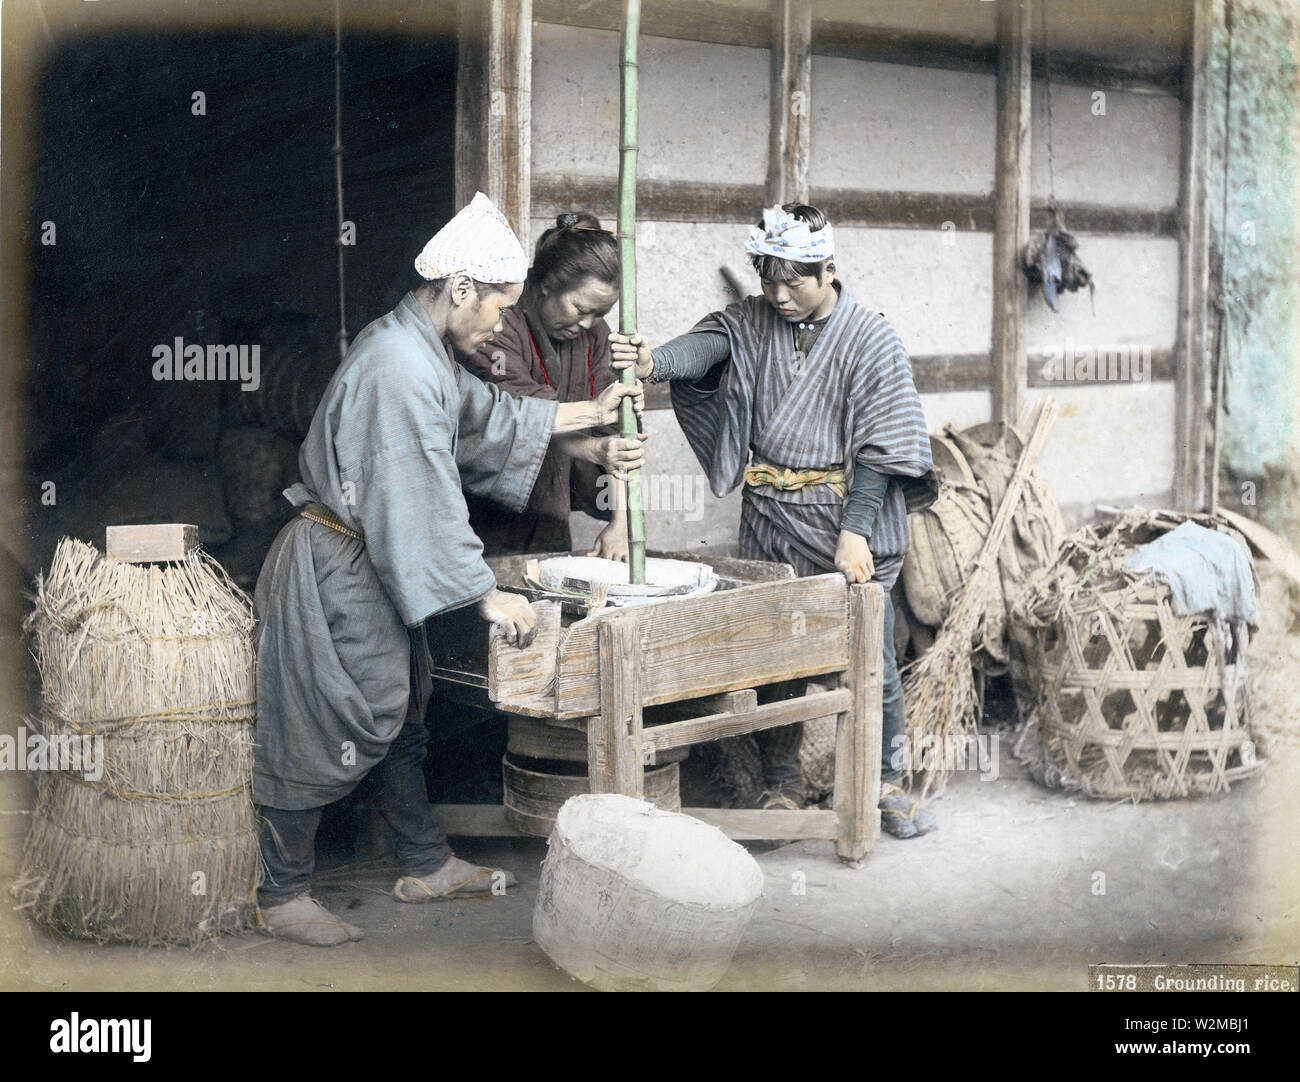 [1880s Japan - Japanische Bauern Schleifen Reis] - Japanische Bauern schleifen Reis der Kleie zu entfernen, 1880. 19 Vintage albumen Foto. Stockfoto